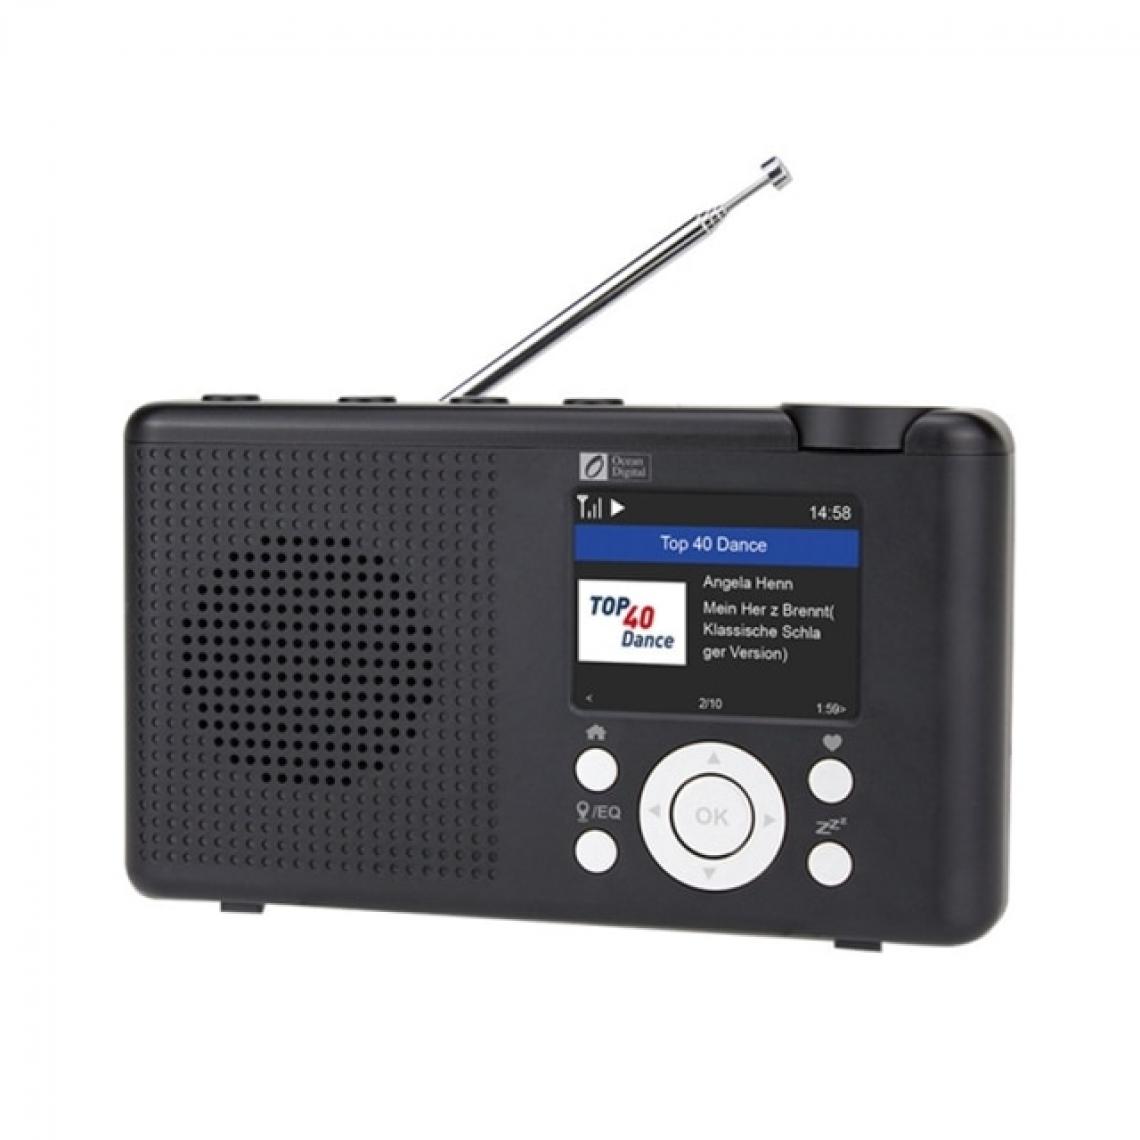 Universal - Portable WiFi Internet Radio Bluetooth Haut-parleur Multifonction FM Radio numérique Dan + avec batterie | Radio(Le noir) - Radio